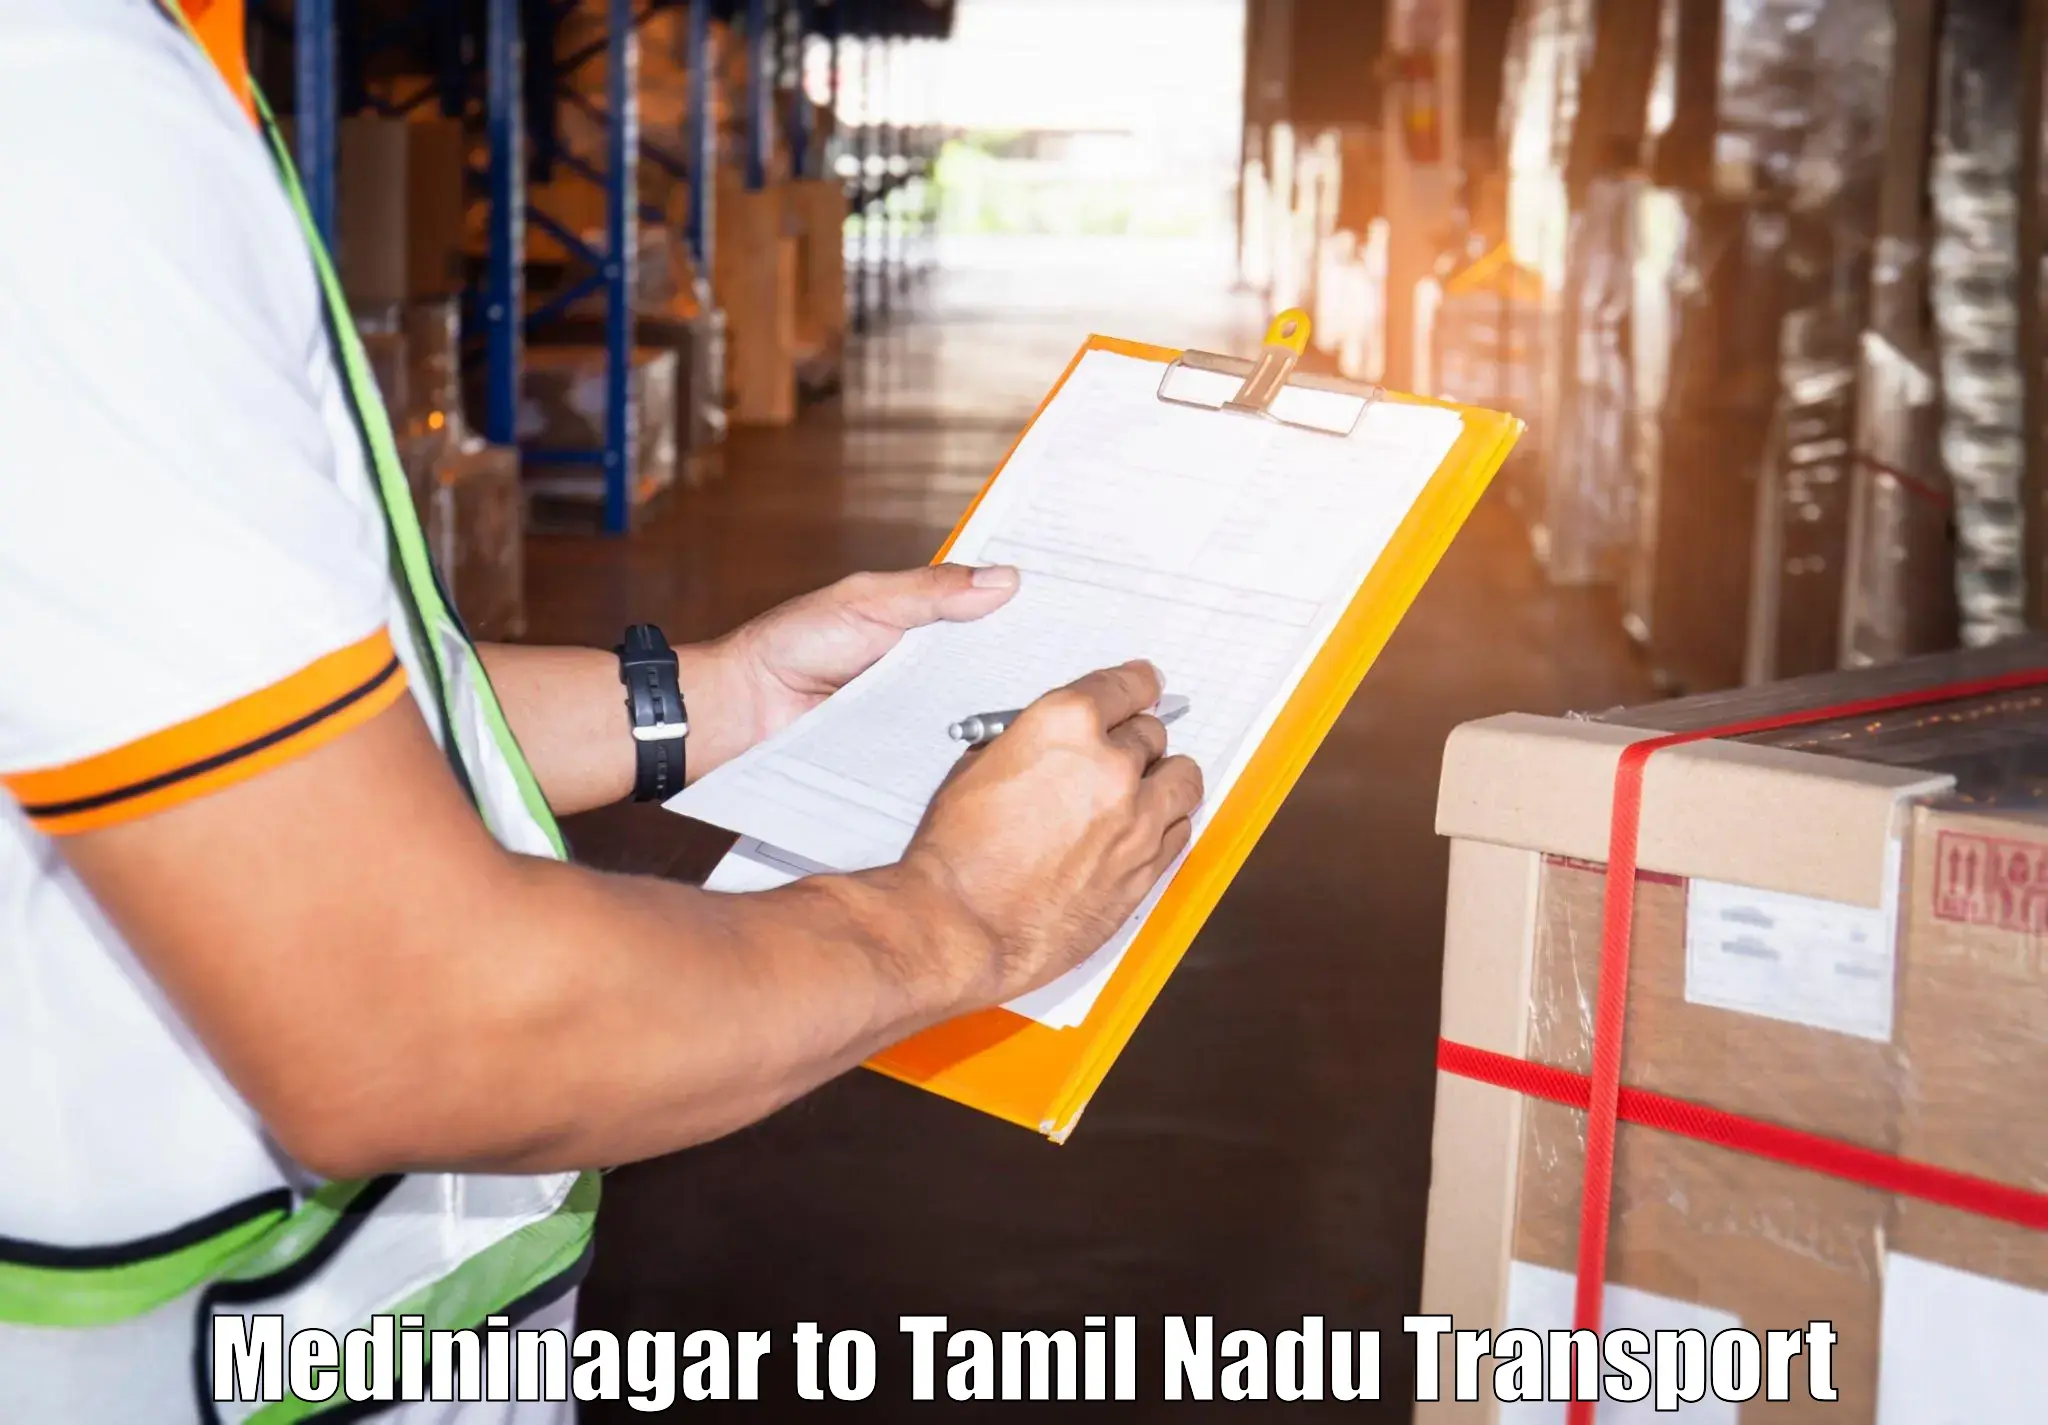 Cargo train transport services Medininagar to Tamil Nadu